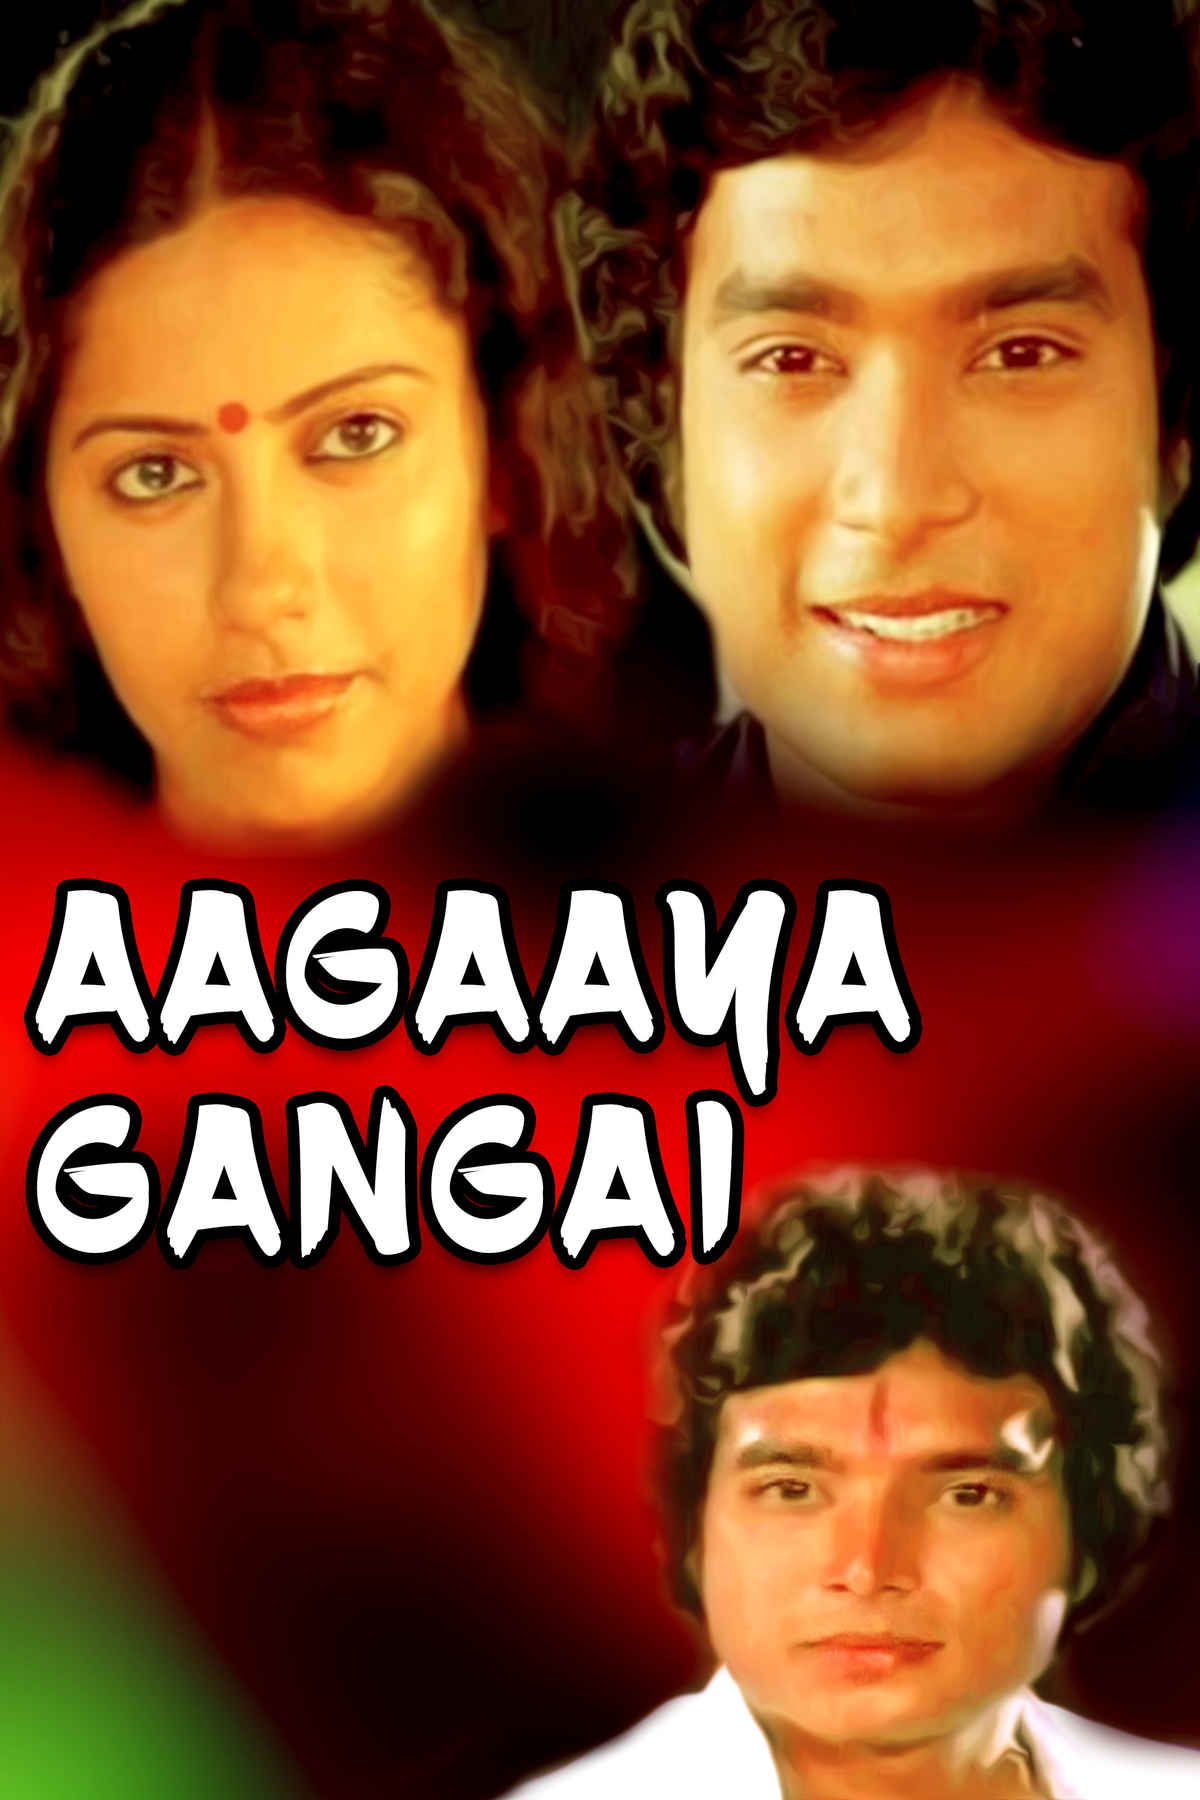 Aagaaya Gangai